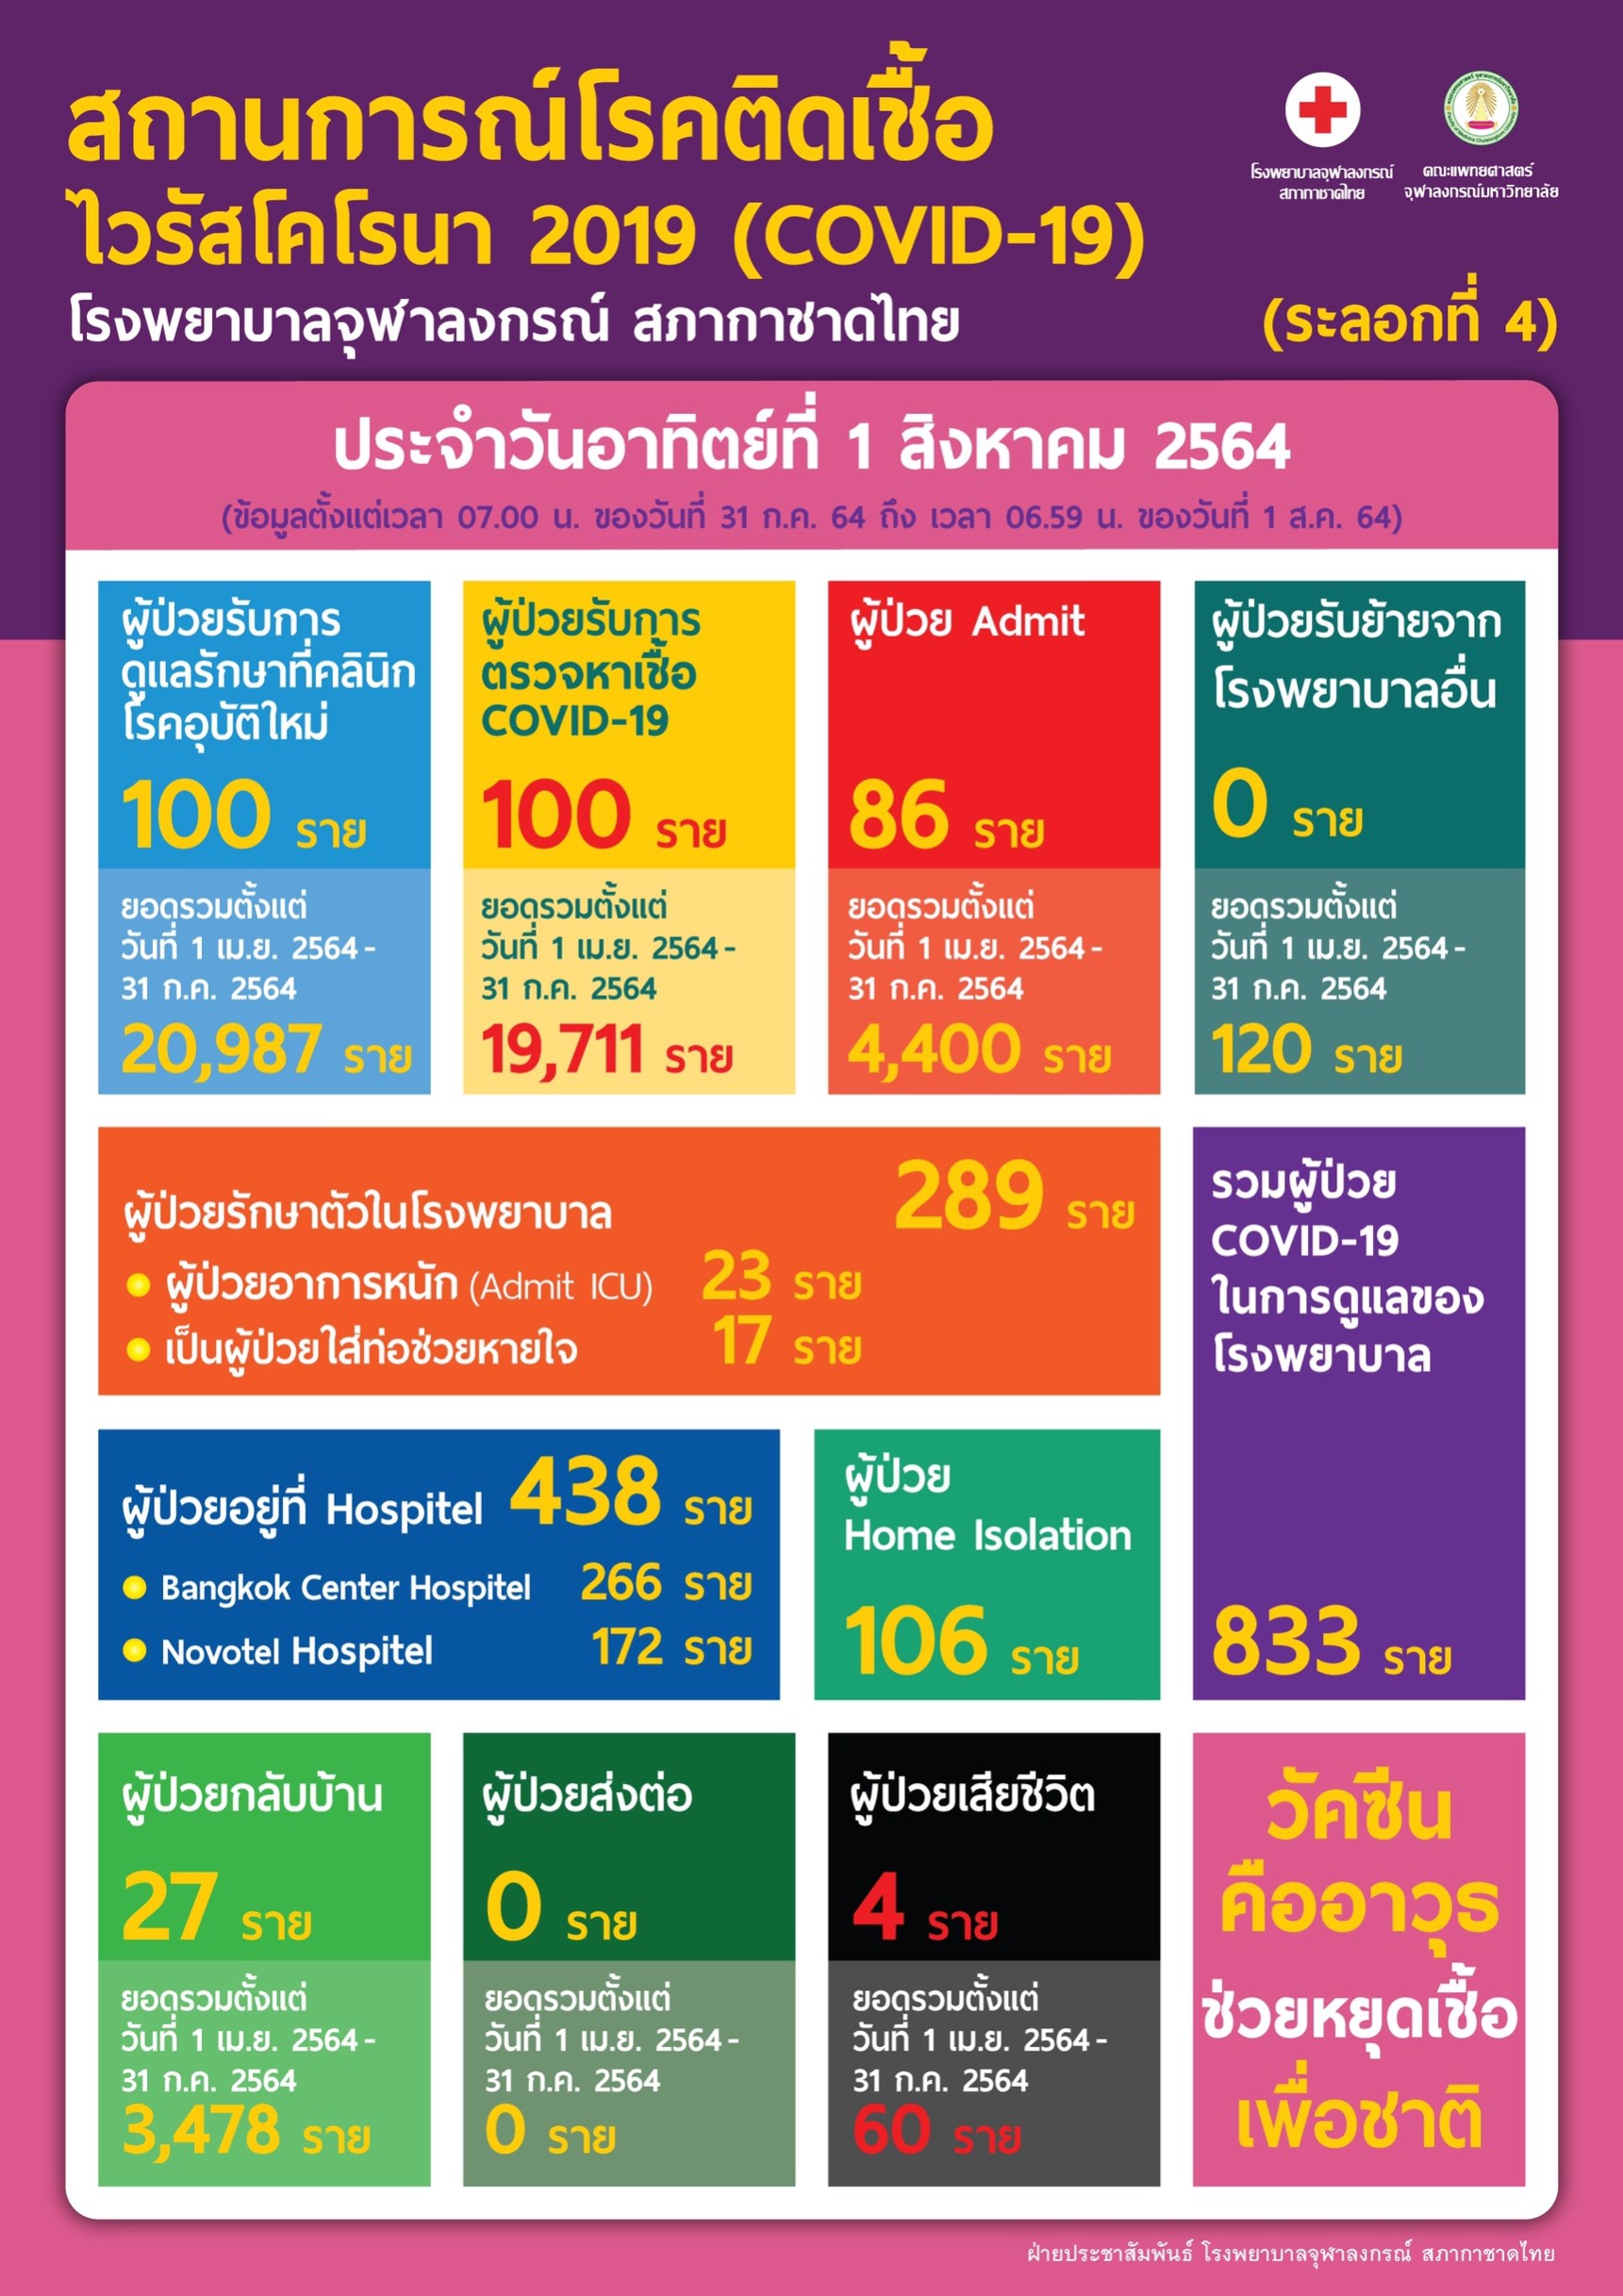 สถานการณ์โรคติดเชื้อไวรัสโคโรนา 2019 (COVID-19) (ระลอกที่ 4) โรงพยาบาลจุฬาลงกรณ์ สภากาชาดไทย ประจำวันอาทิตย์ที่ 1 สิงหาคม 2564